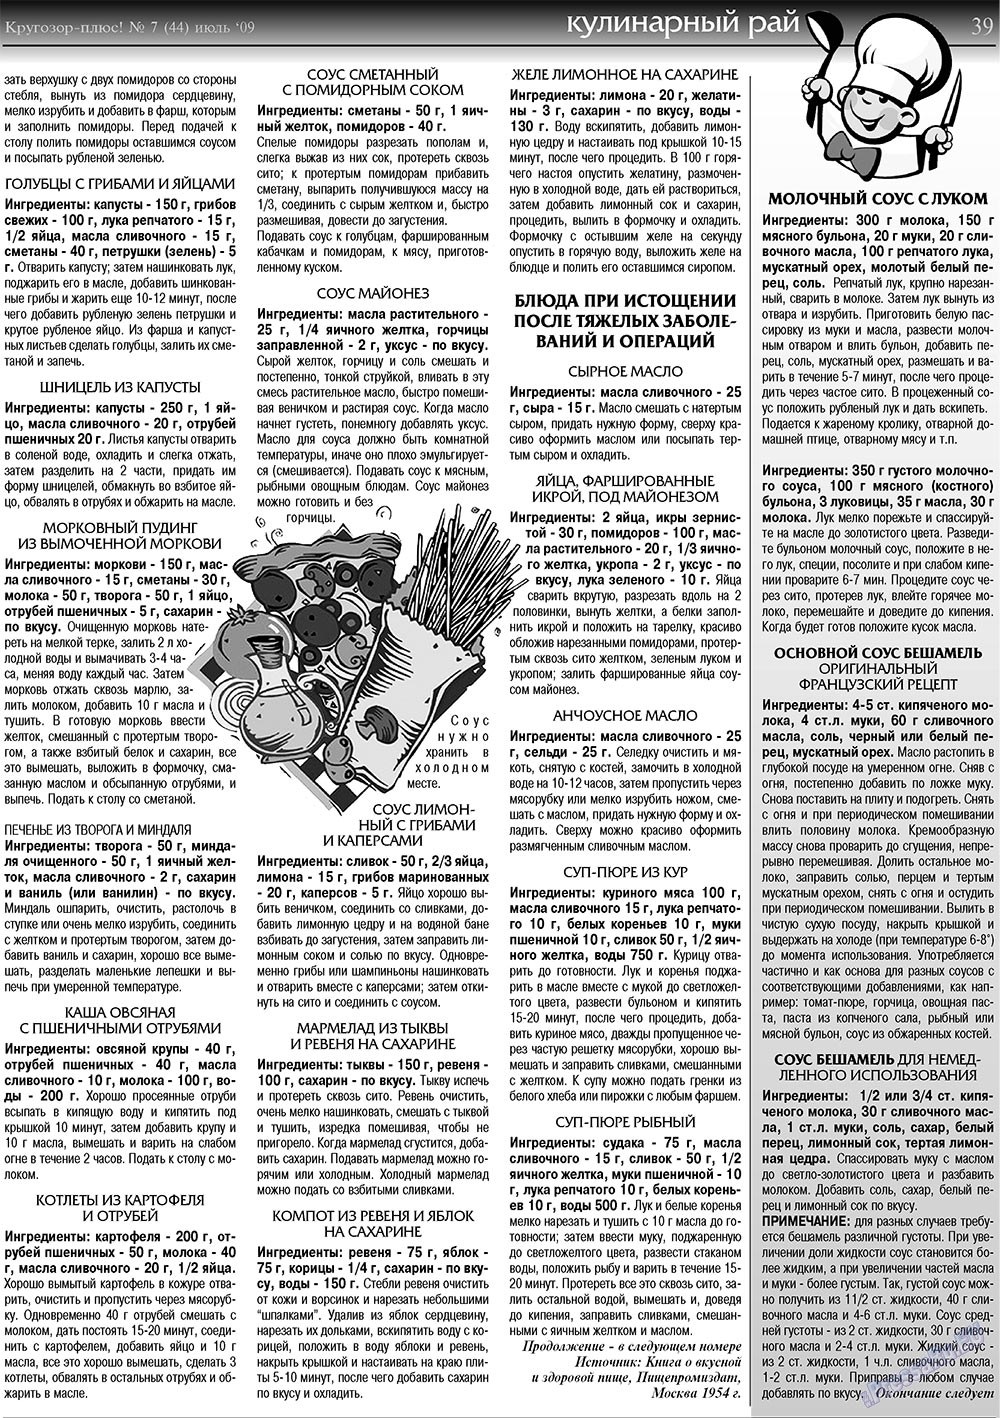 Кругозор плюс!, газета. 2009 №7 стр.39